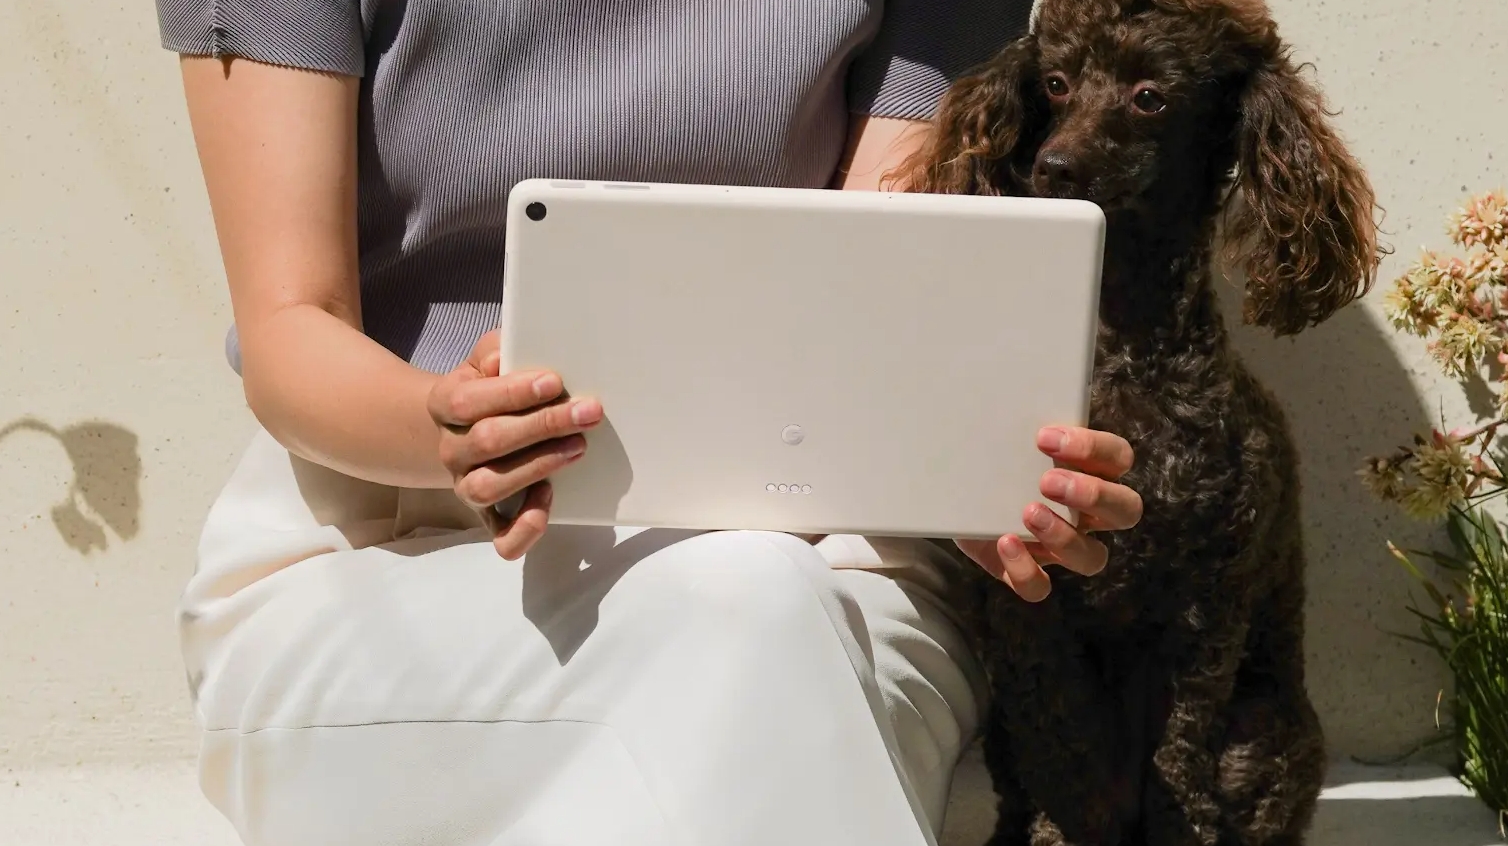 Gambar Tablet Pixel dari belakang, di tangan seseorang